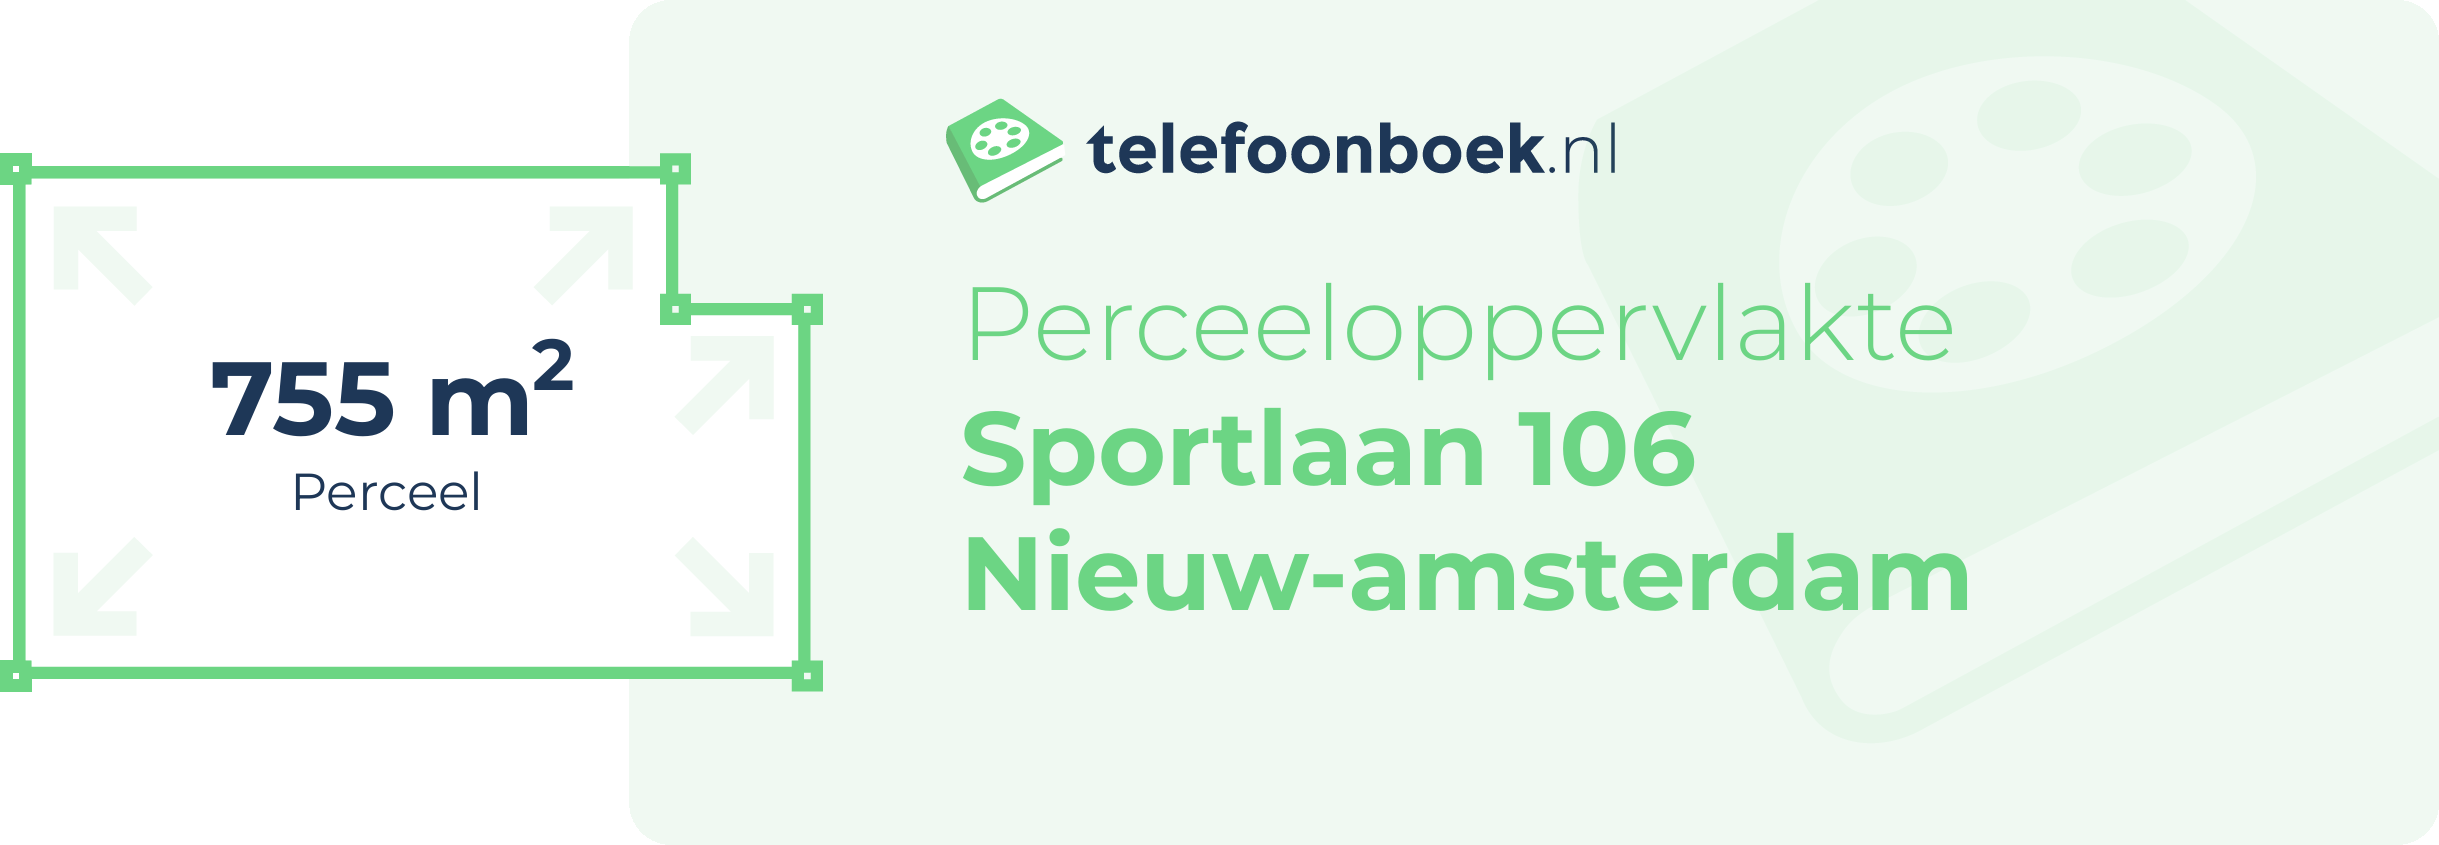 Perceeloppervlakte Sportlaan 106 Nieuw-Amsterdam